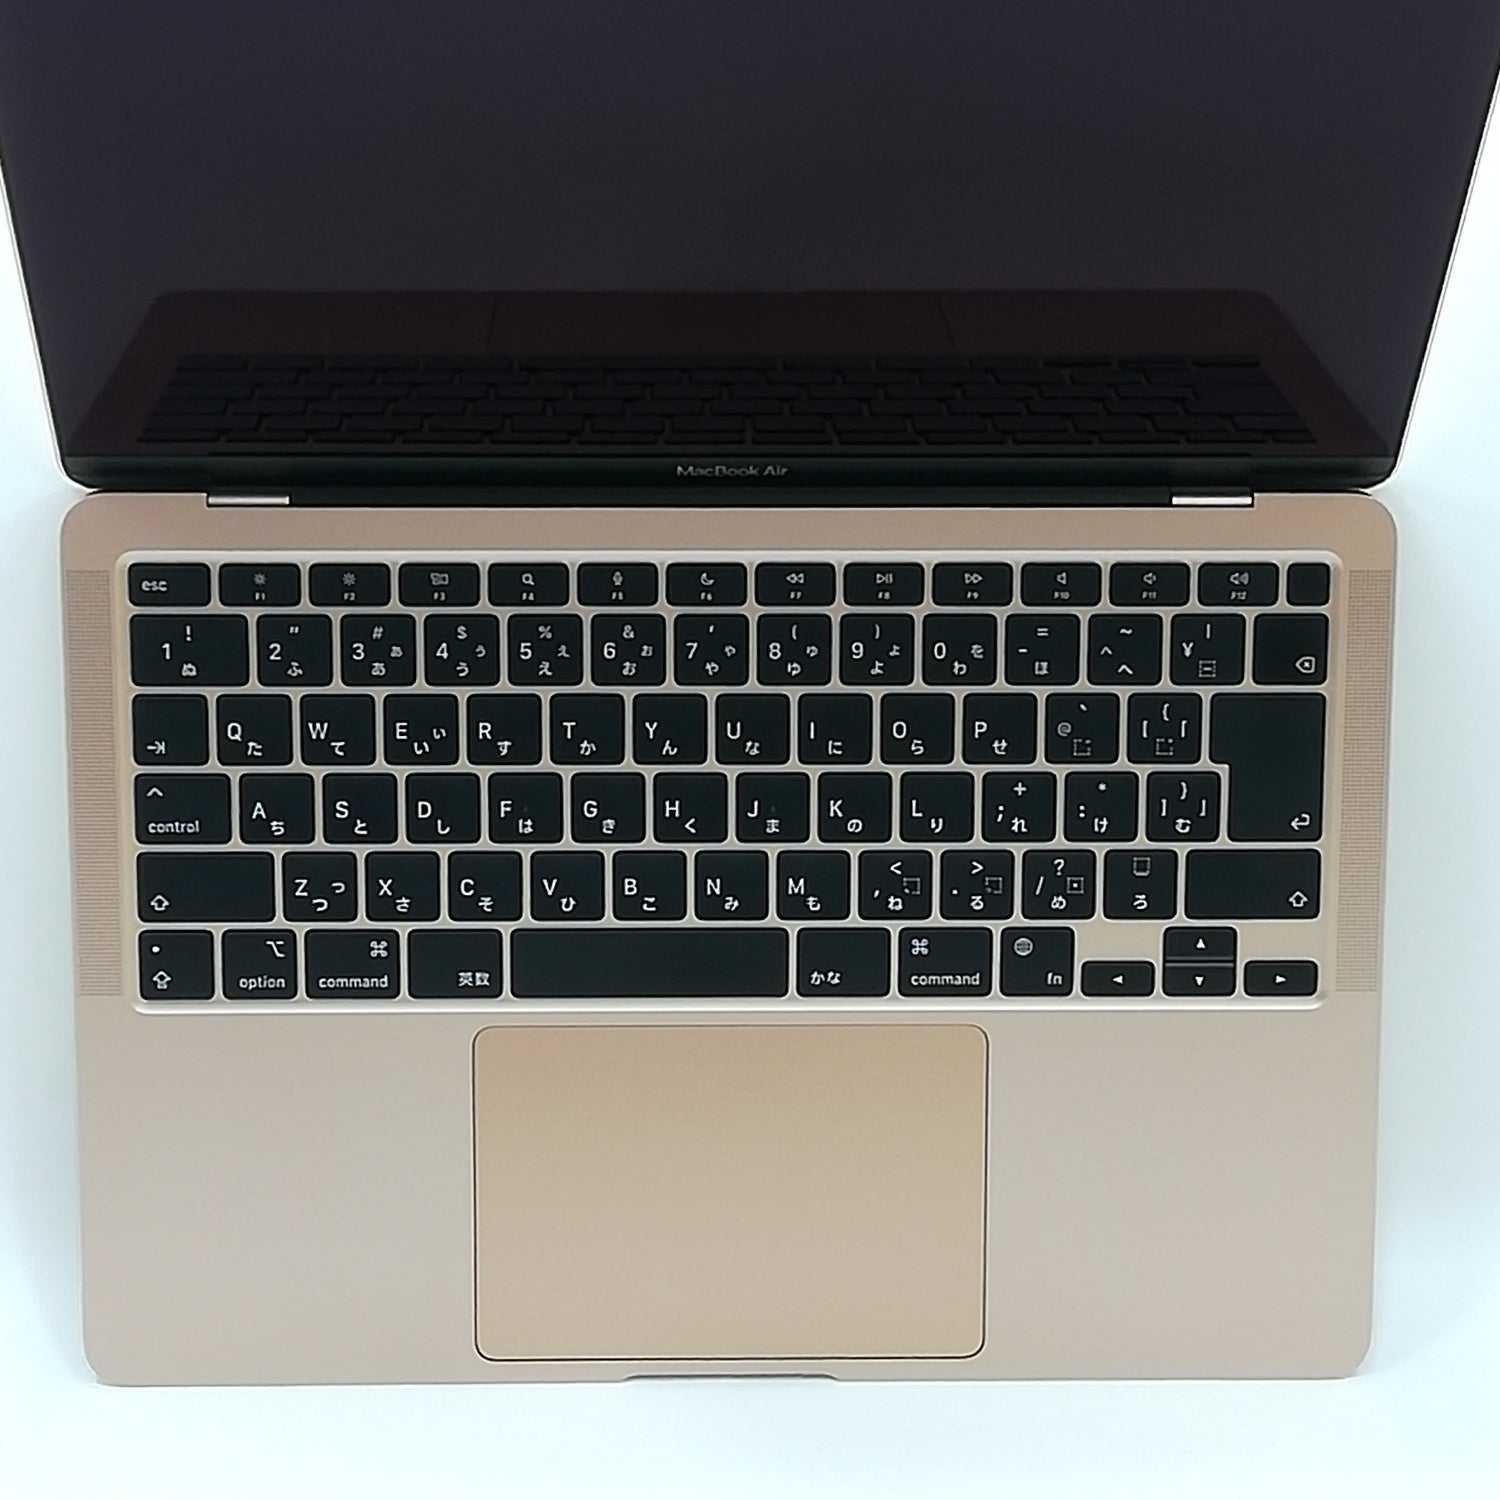 MacBook 中古 販売】MacBook Air M1 / 13インチ / Mid2020 / 8GB 